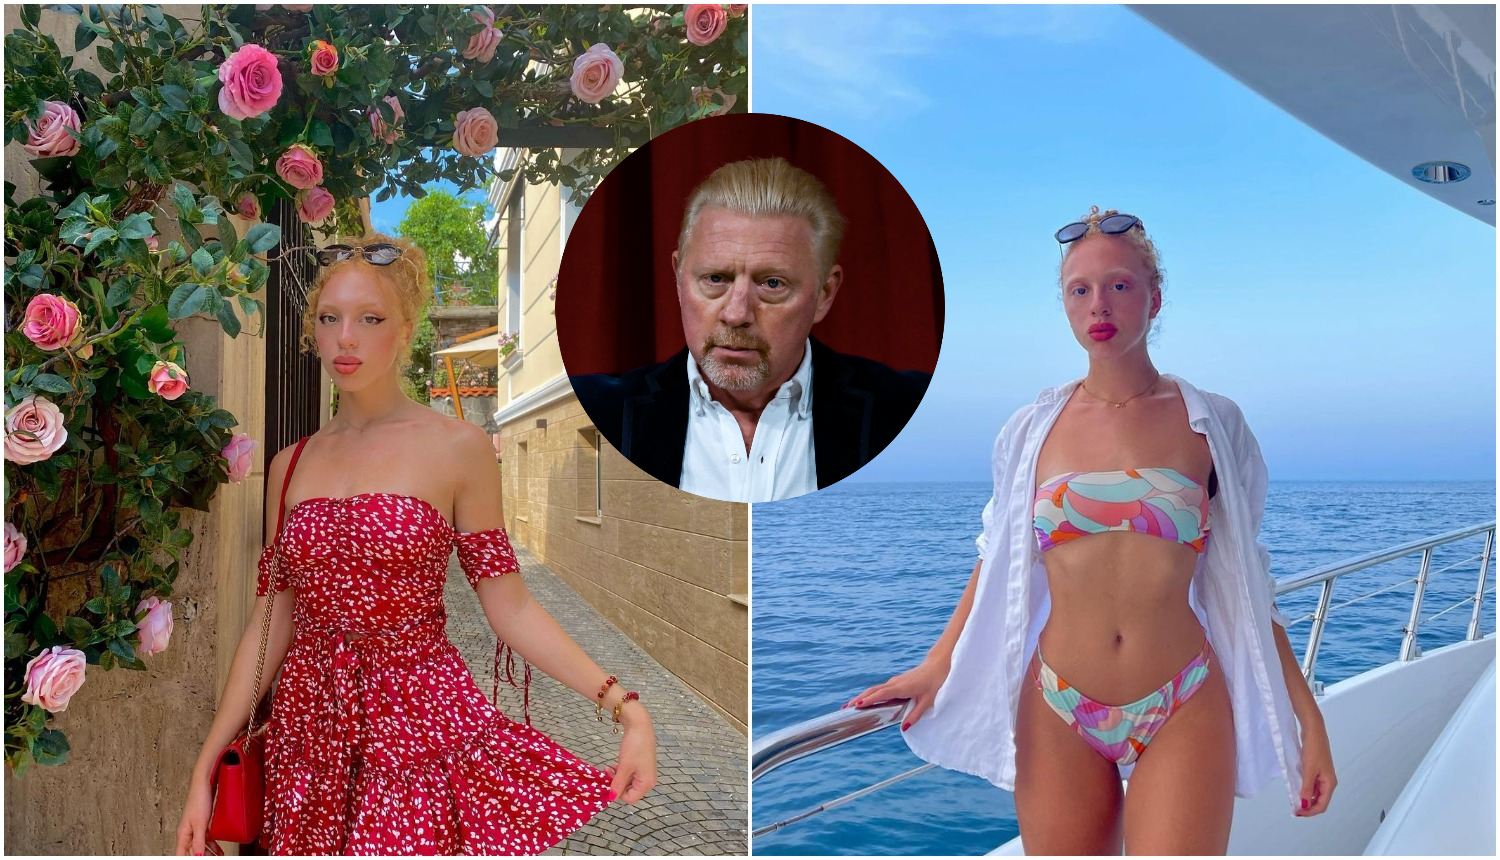 Crvenokosa manekenka kopija je tate Borisa Beckera: Tvrdio je da nije njegova kći pa popustio